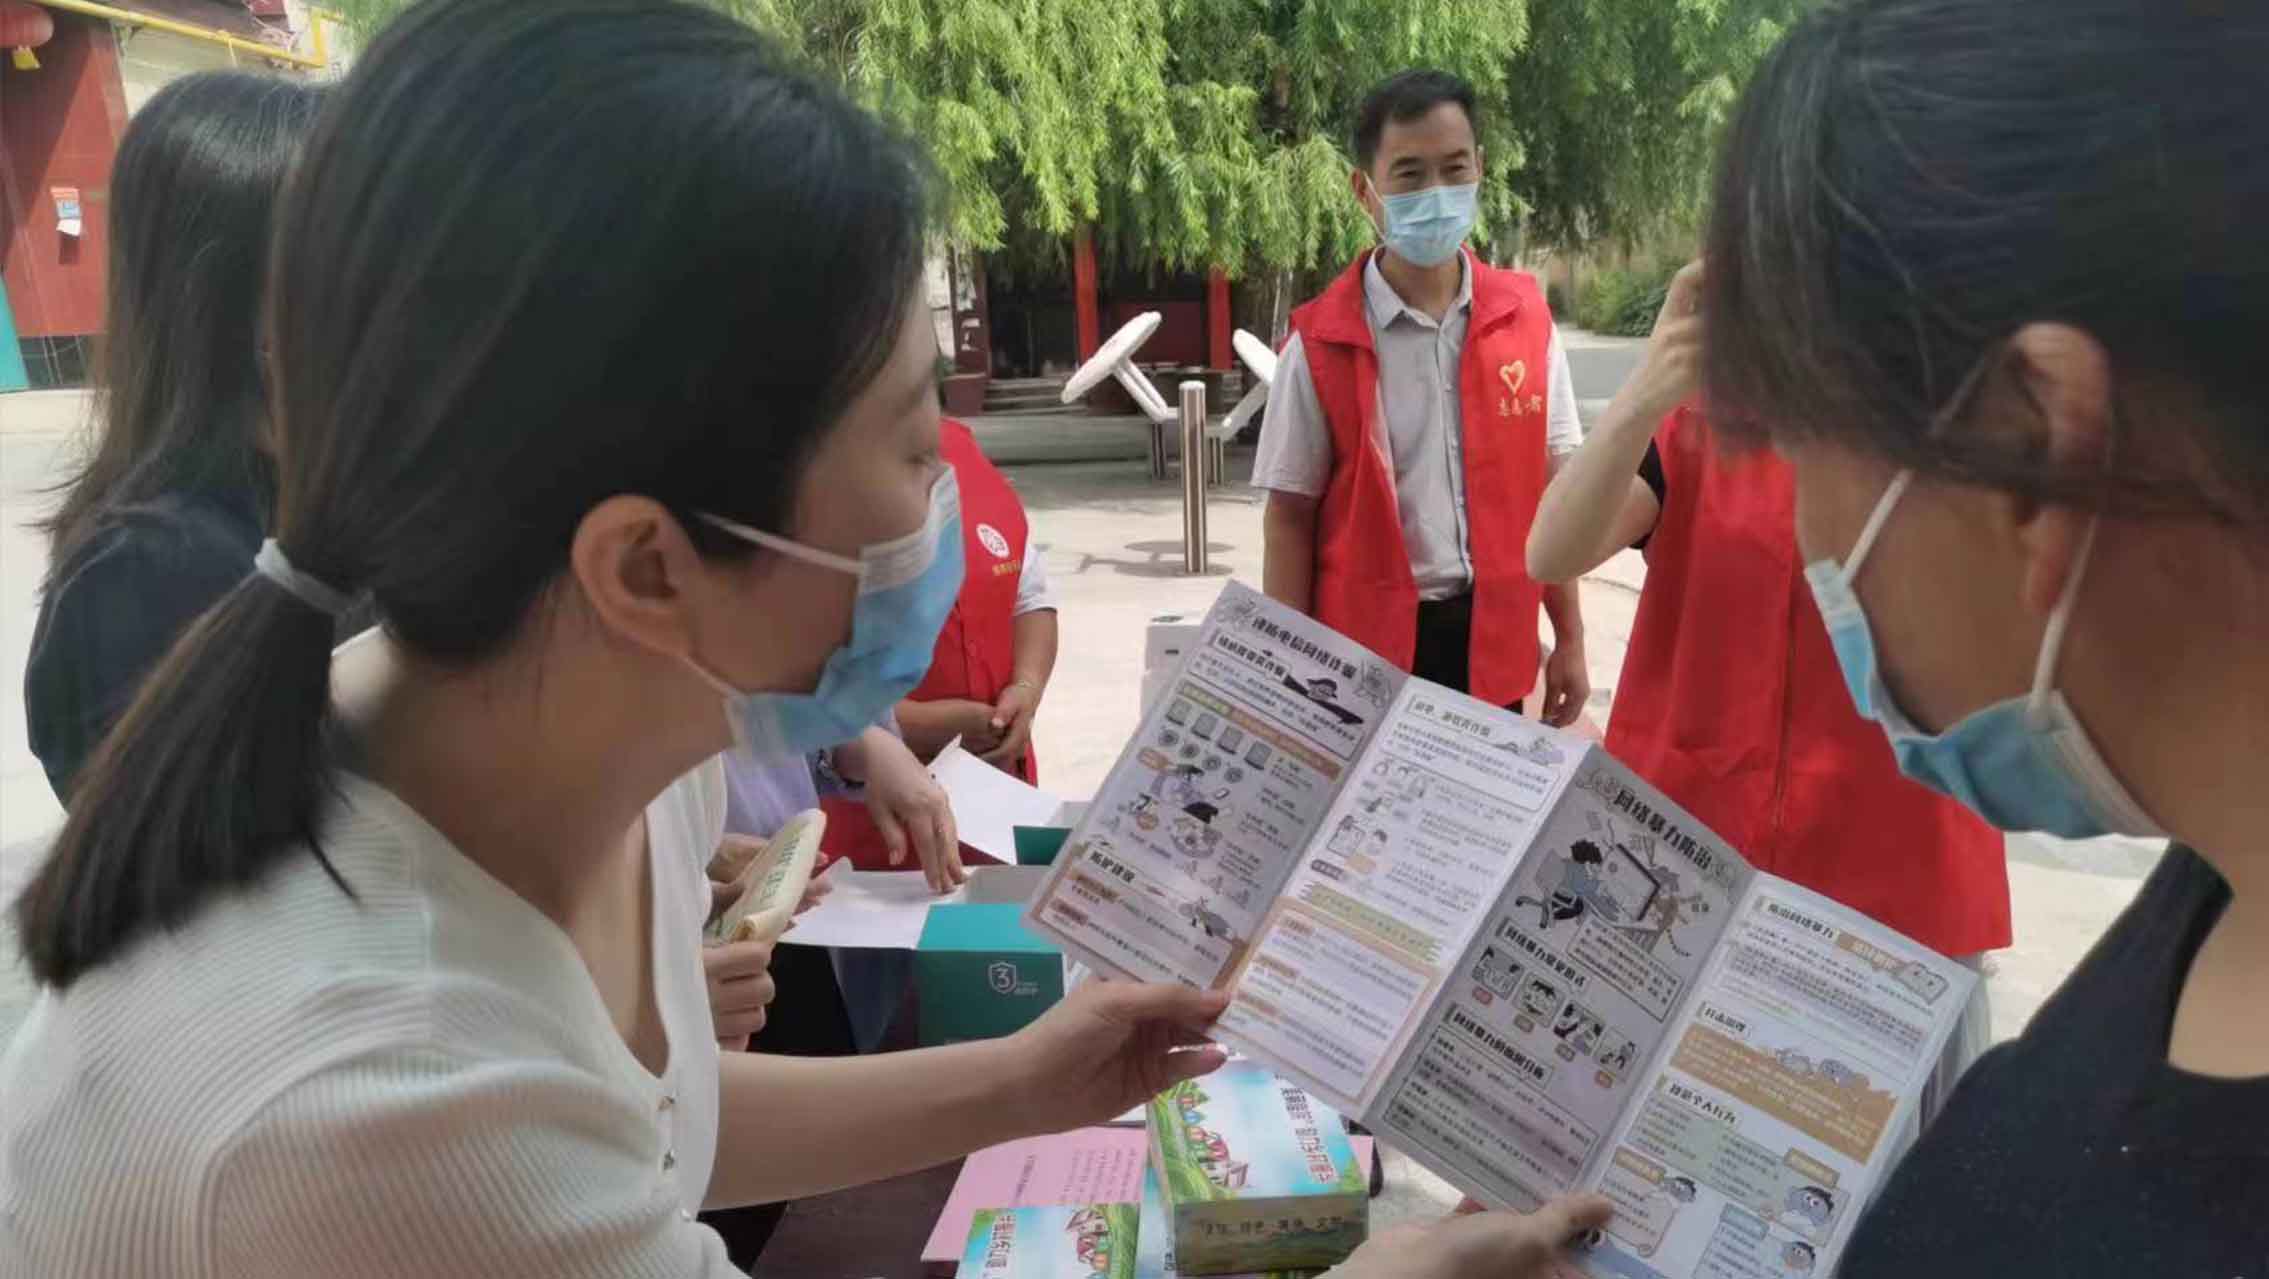 邯郸经济技术开发区工作人员在社区宣传活动国家网络安全知识。 吴洋摄